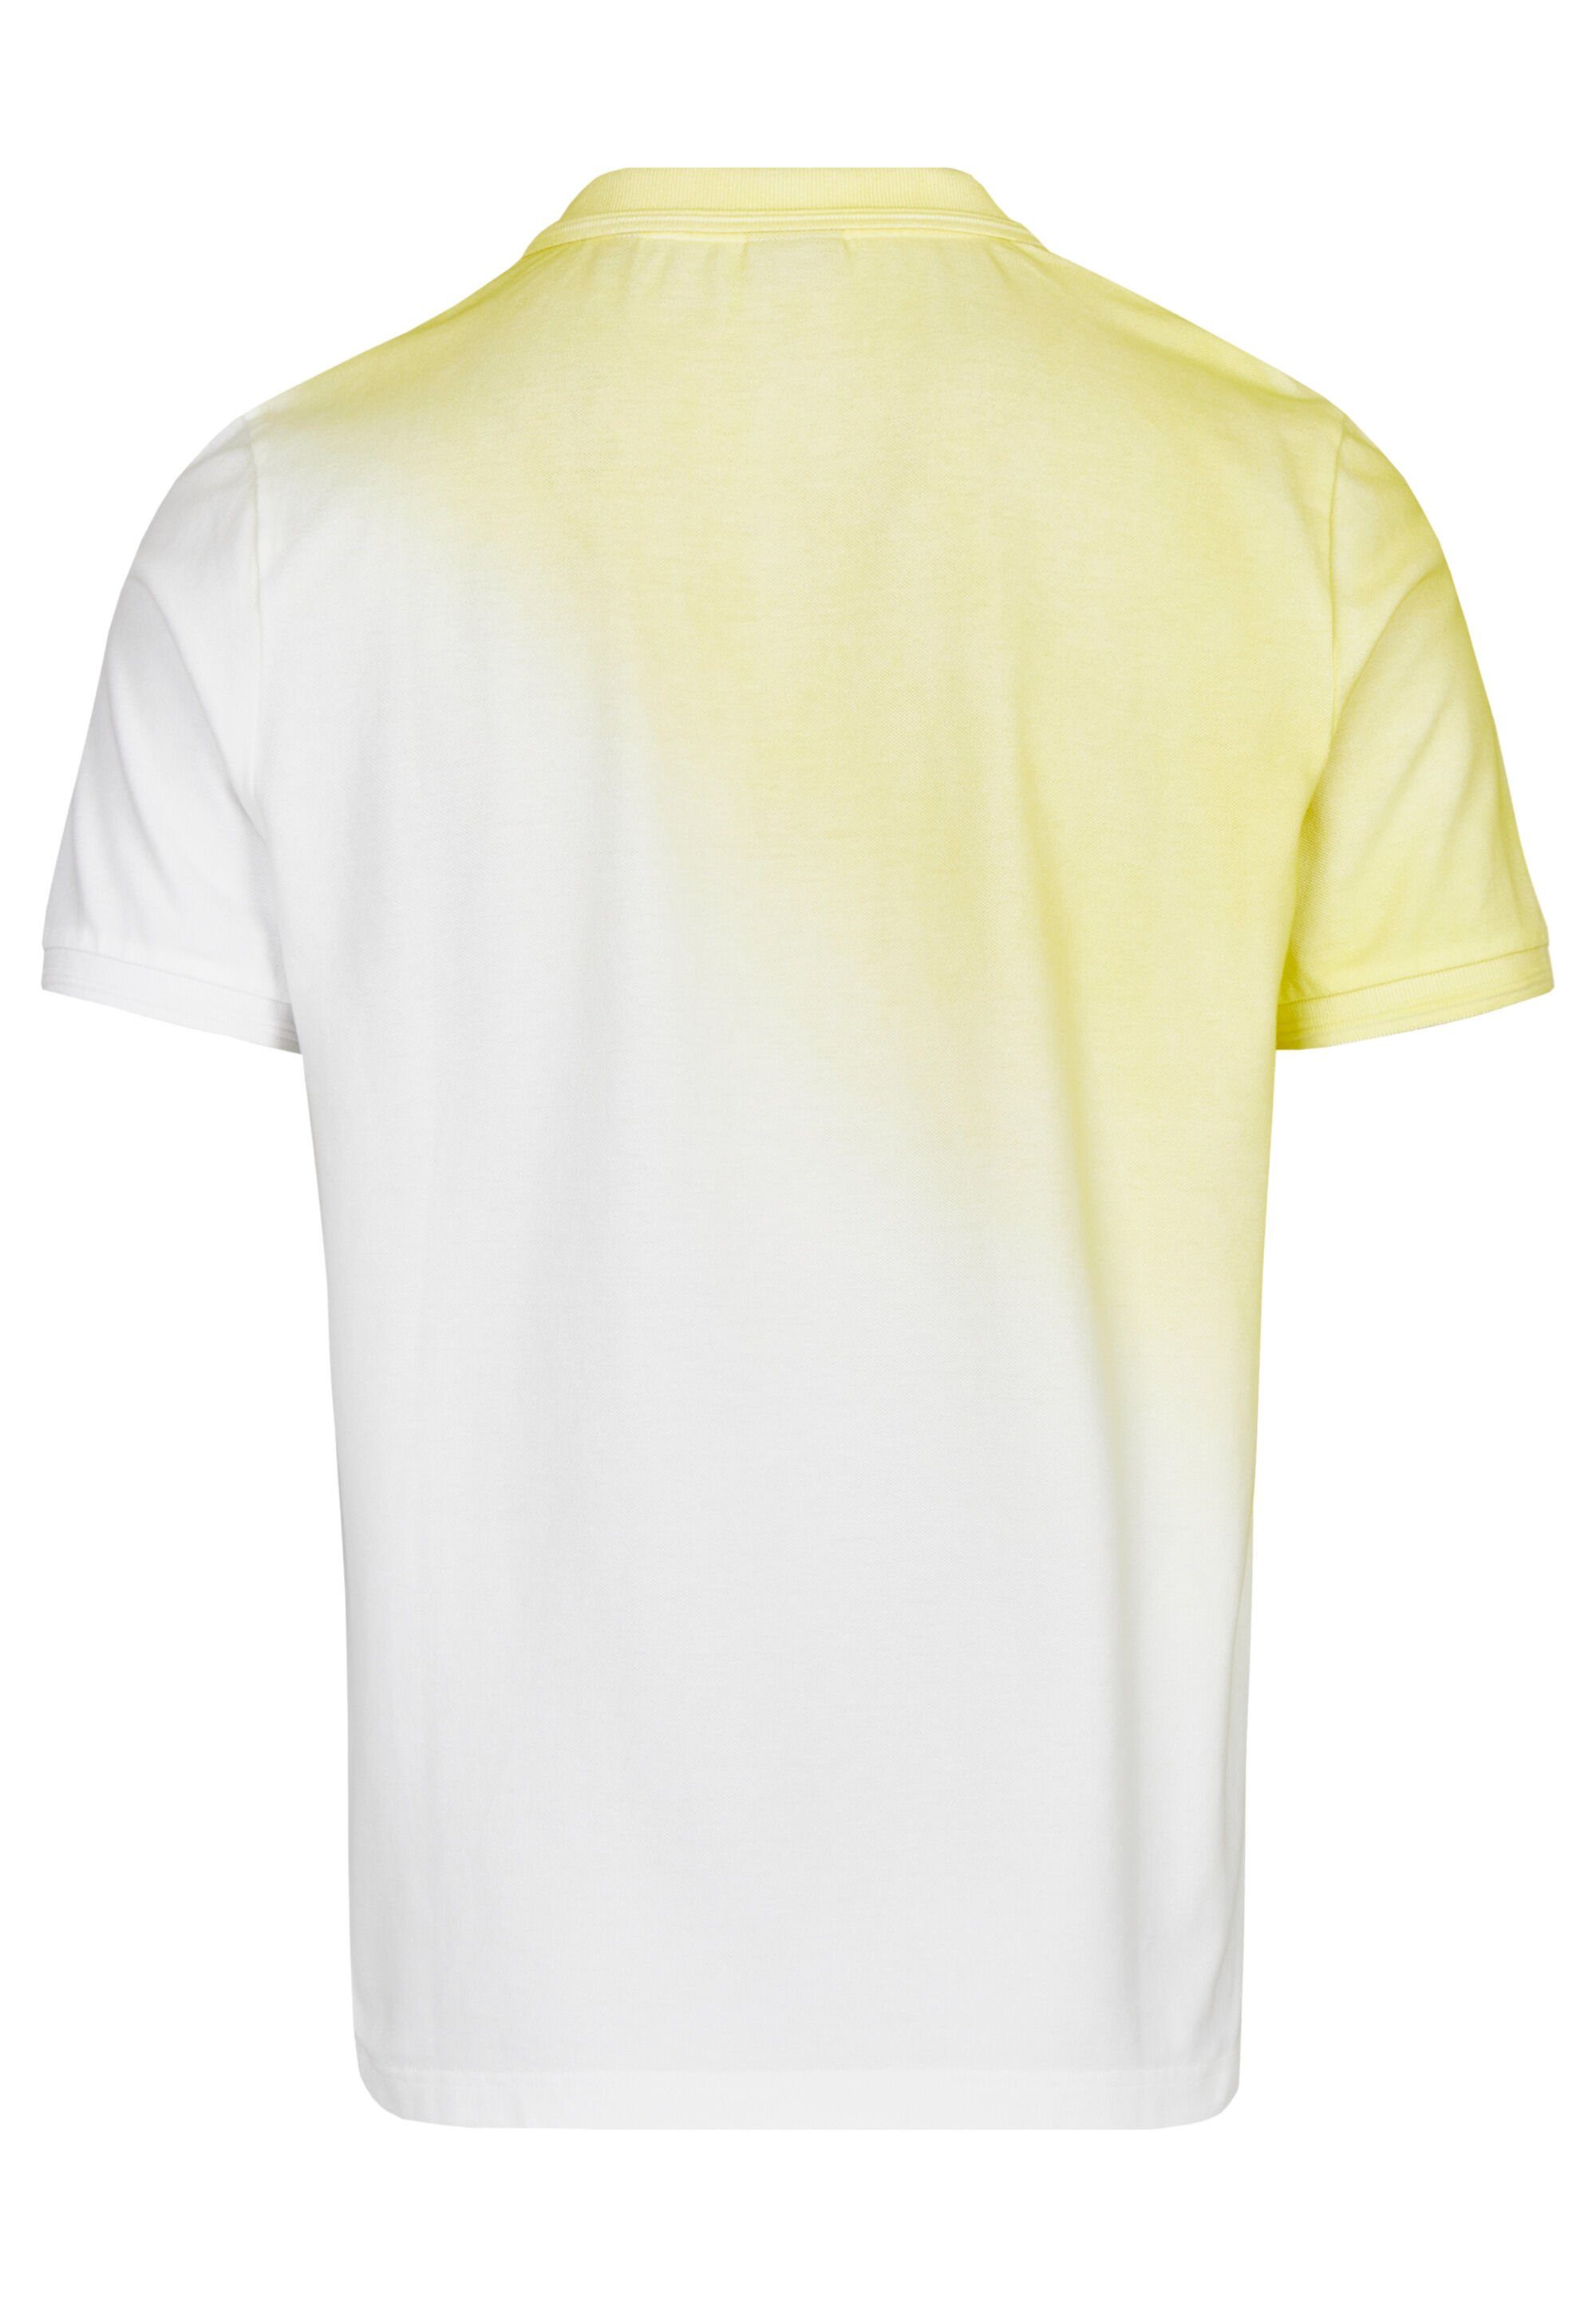 Spray-Dyed-Effekt PARIS vanilla mit HECHTER ausgefallenem Poloshirt